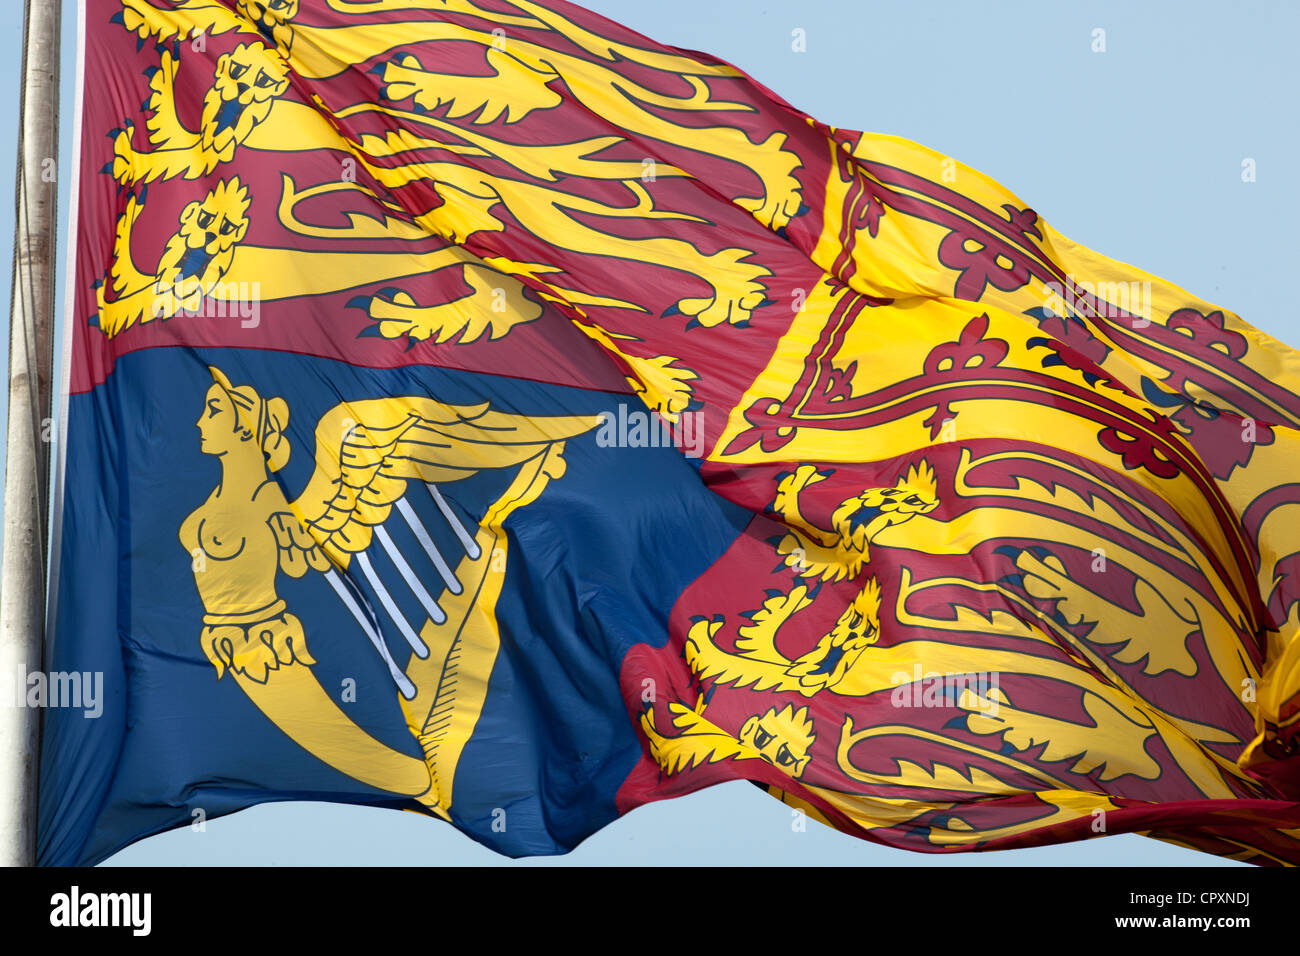 Le drapeau Royal Standard volant au-dessus du palais de Buckingham. Ceci indique si la Reine est dans la résidence Banque D'Images